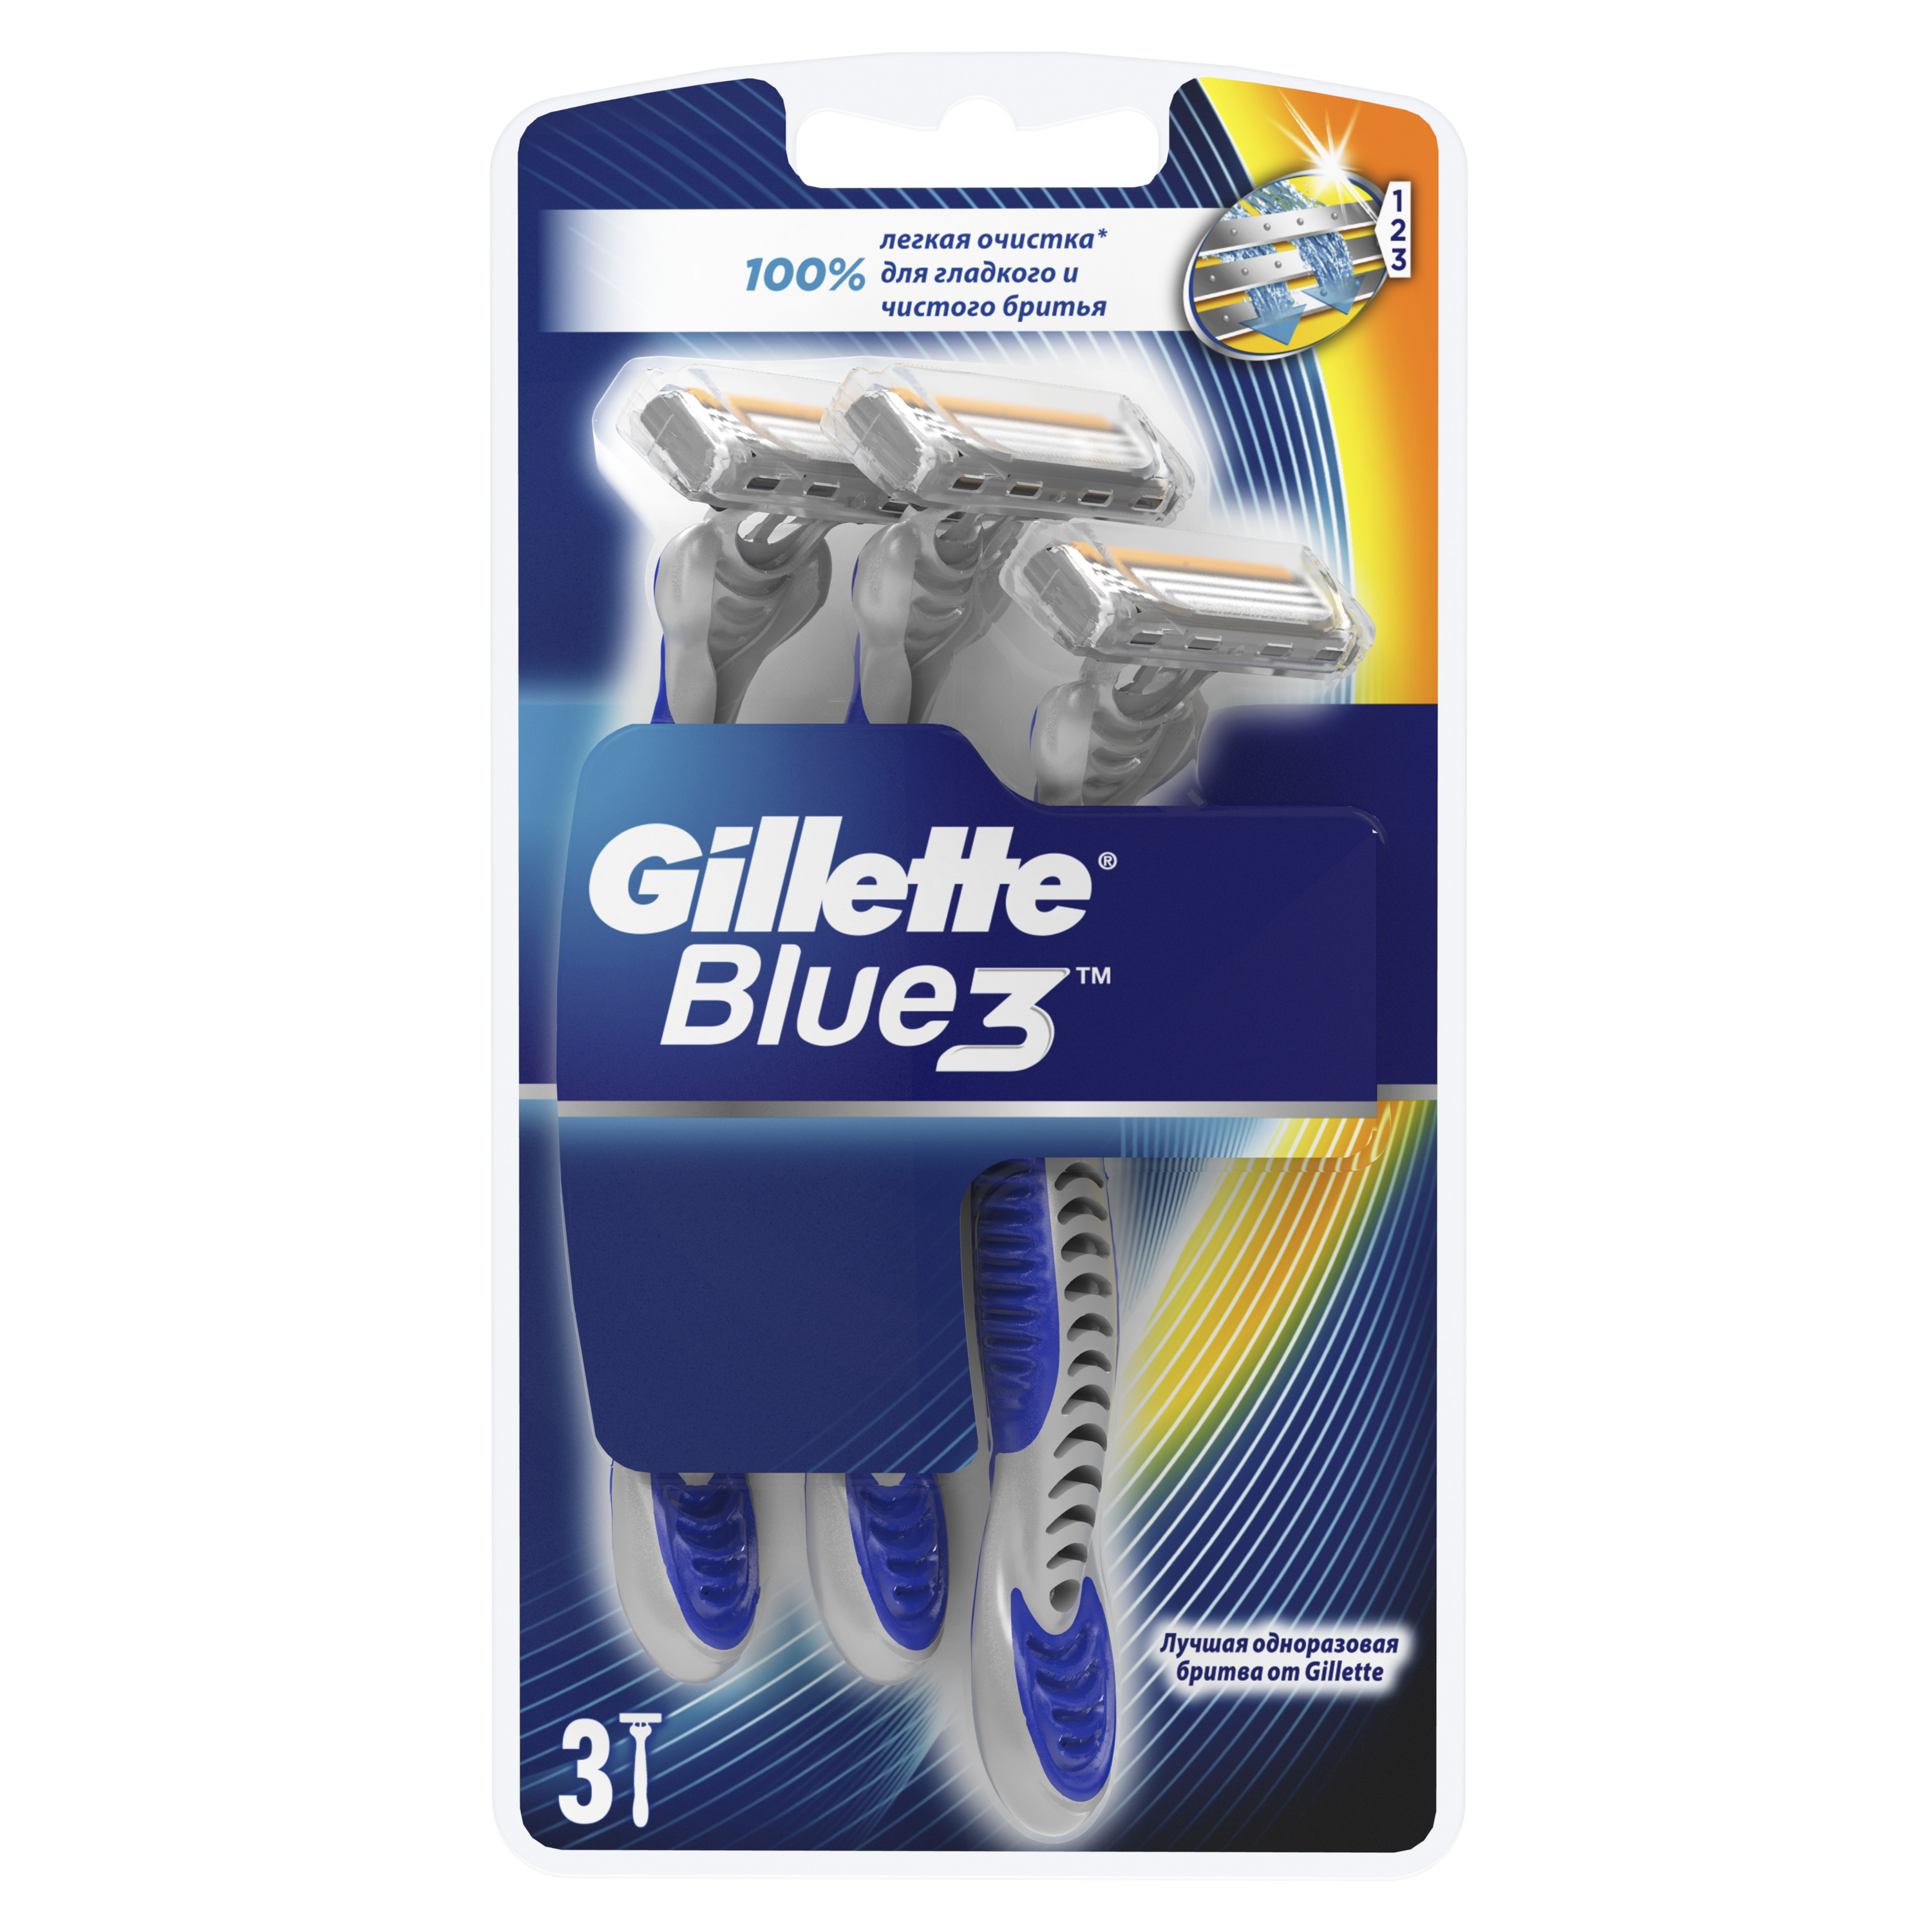 Одноразовая мужская бритва Gillette Blue3 3 шт